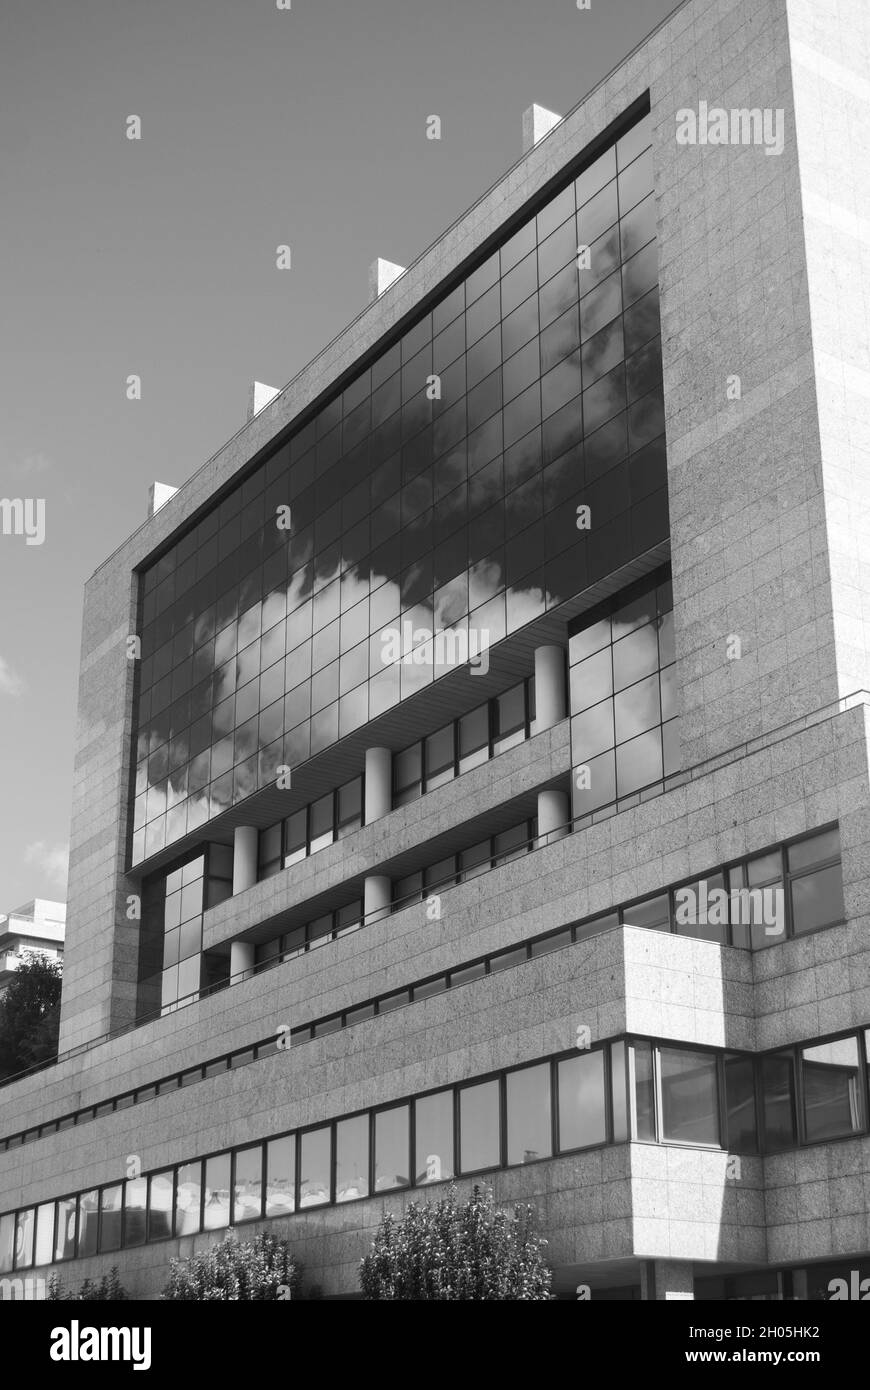 Abstrakte Stadtarchitektur, Spiegelung des bewölkten Himmels in den Fenstern des Wolkenkratzers des Gebäudes, mit Glas bedeckt - Schwarz-Weiß, Monochrom Stockfoto